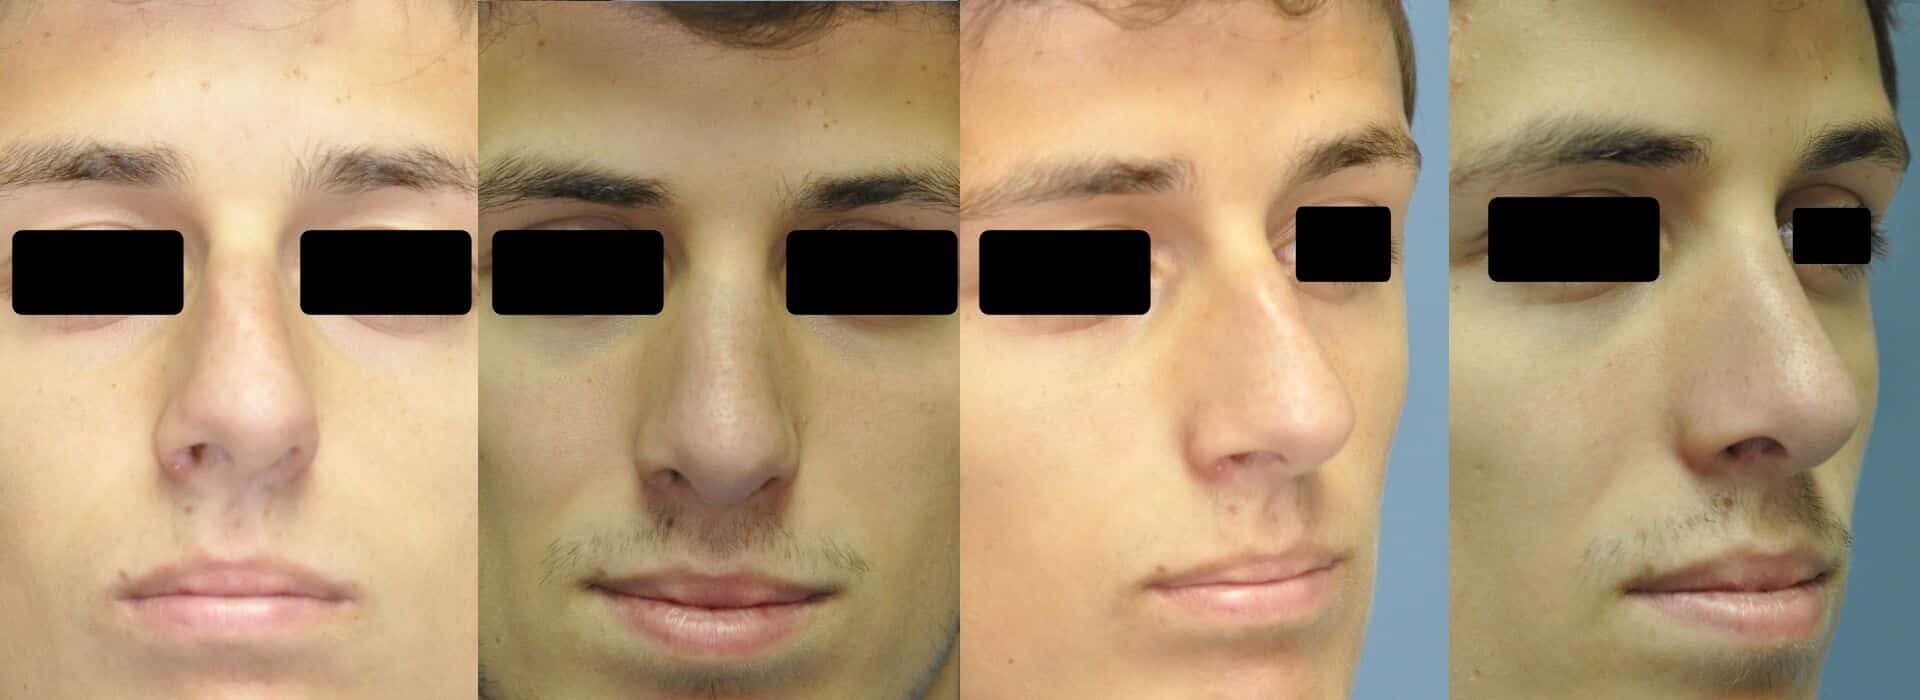 Antes y después de la rinoplastia en un hombre